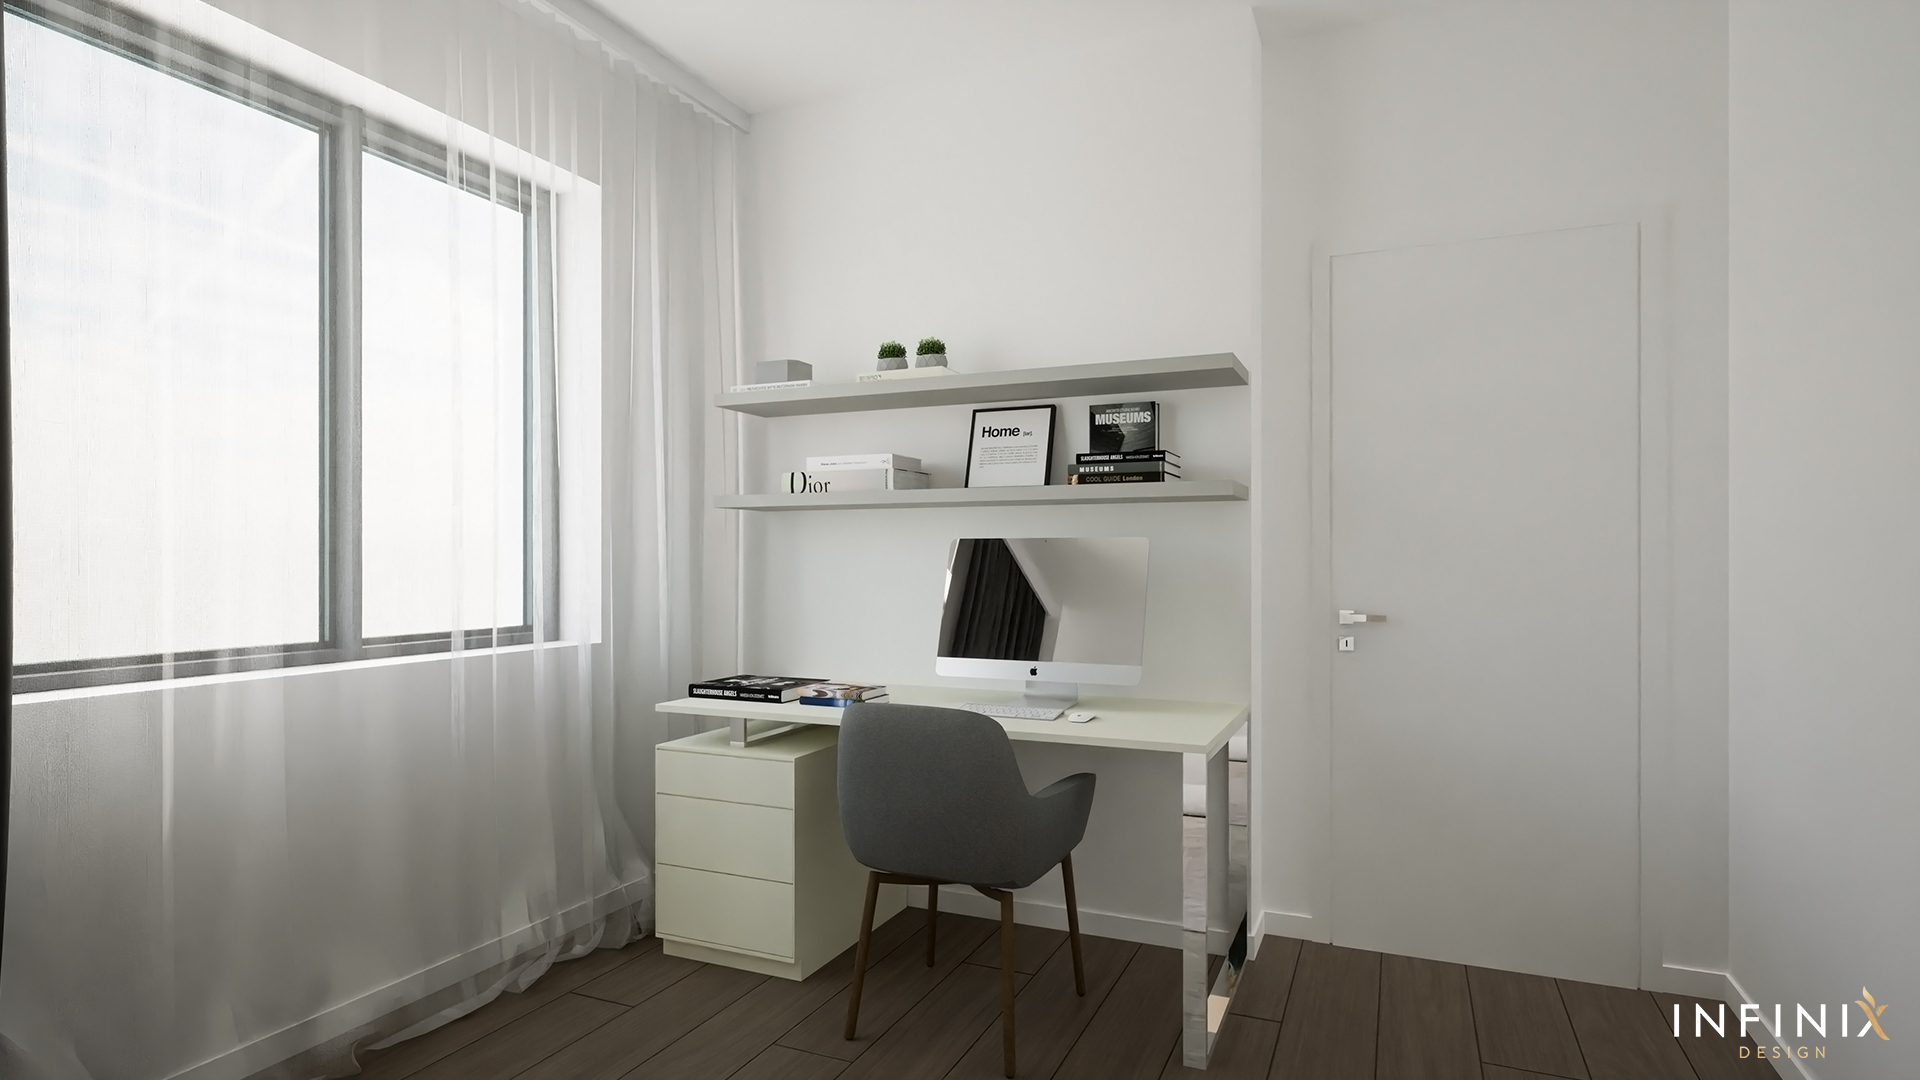 012.09_Infinix_design_interior_apartament